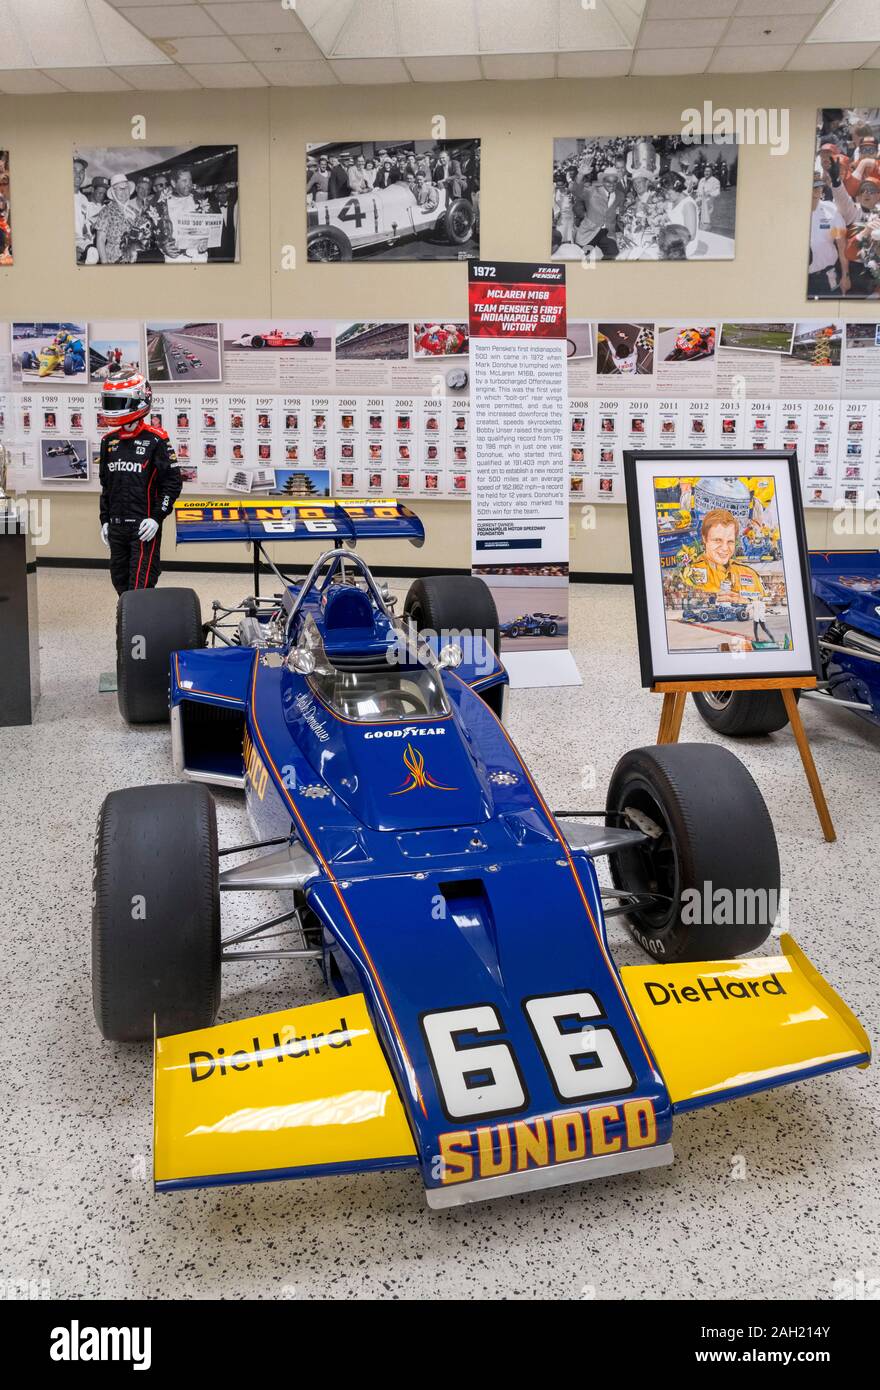 McLaren M16B. El equipo Penske ganó el1972 Indy 500 en este coche con conductor Mark Donohue, Indianapolis Motor Speedway Museum, Indianapolis, Indiana, EE.UU. Foto de stock